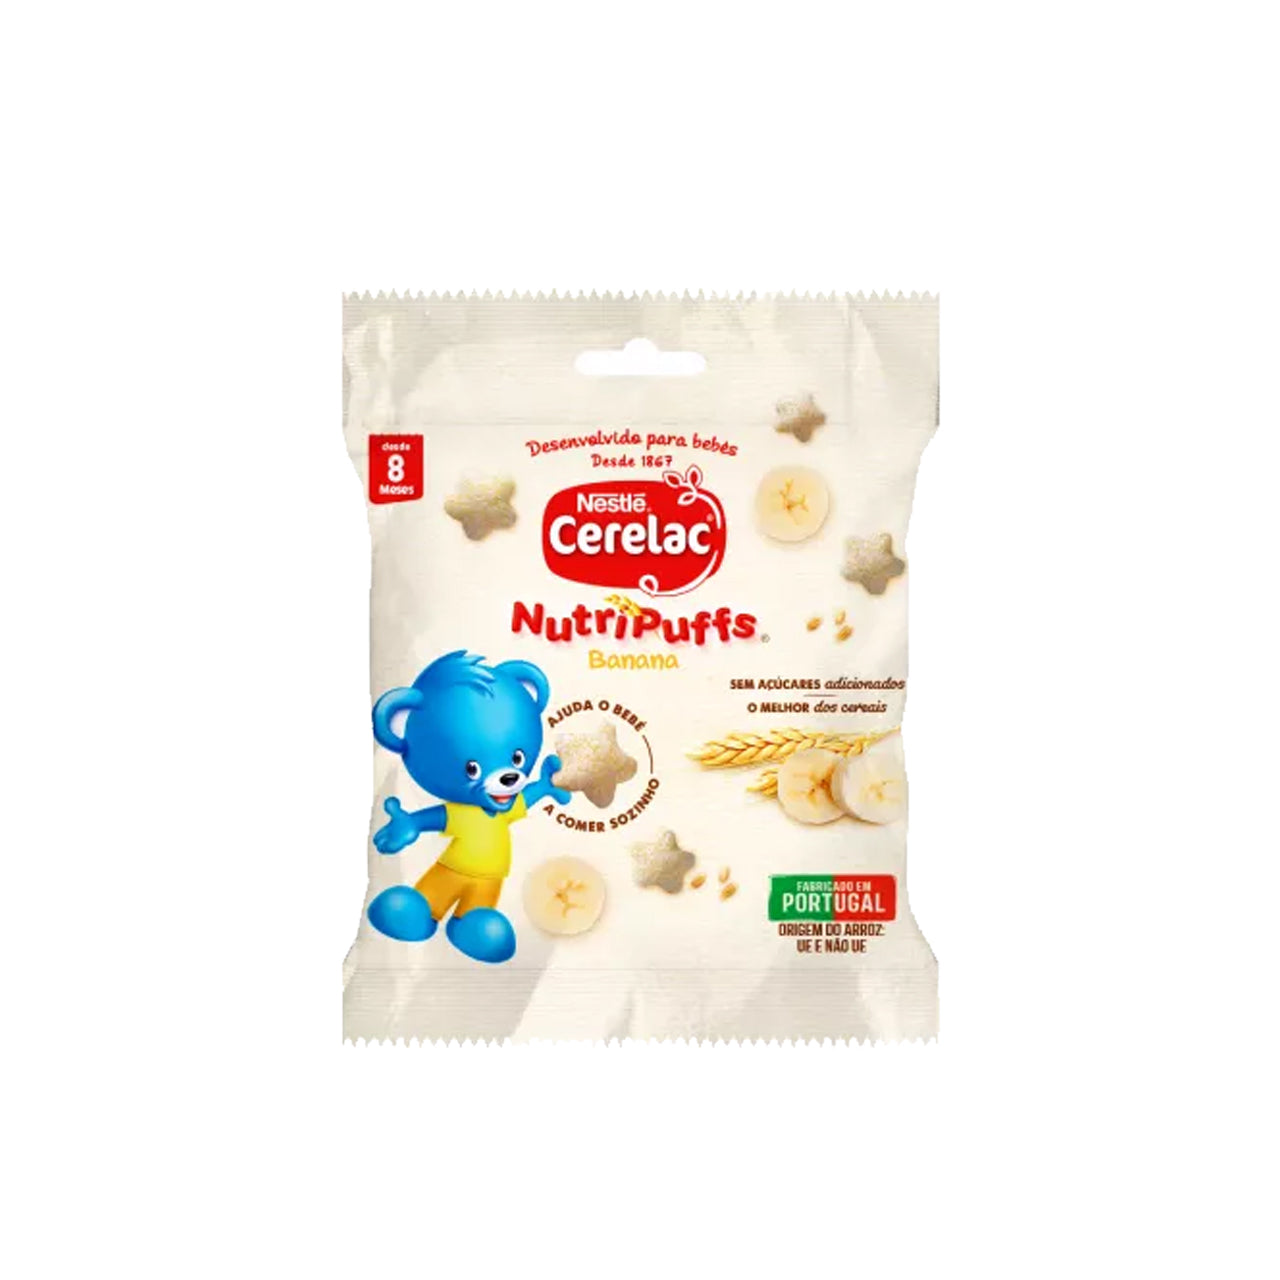 Nestlé Cerelac Nutripuffs Banana 7 gr